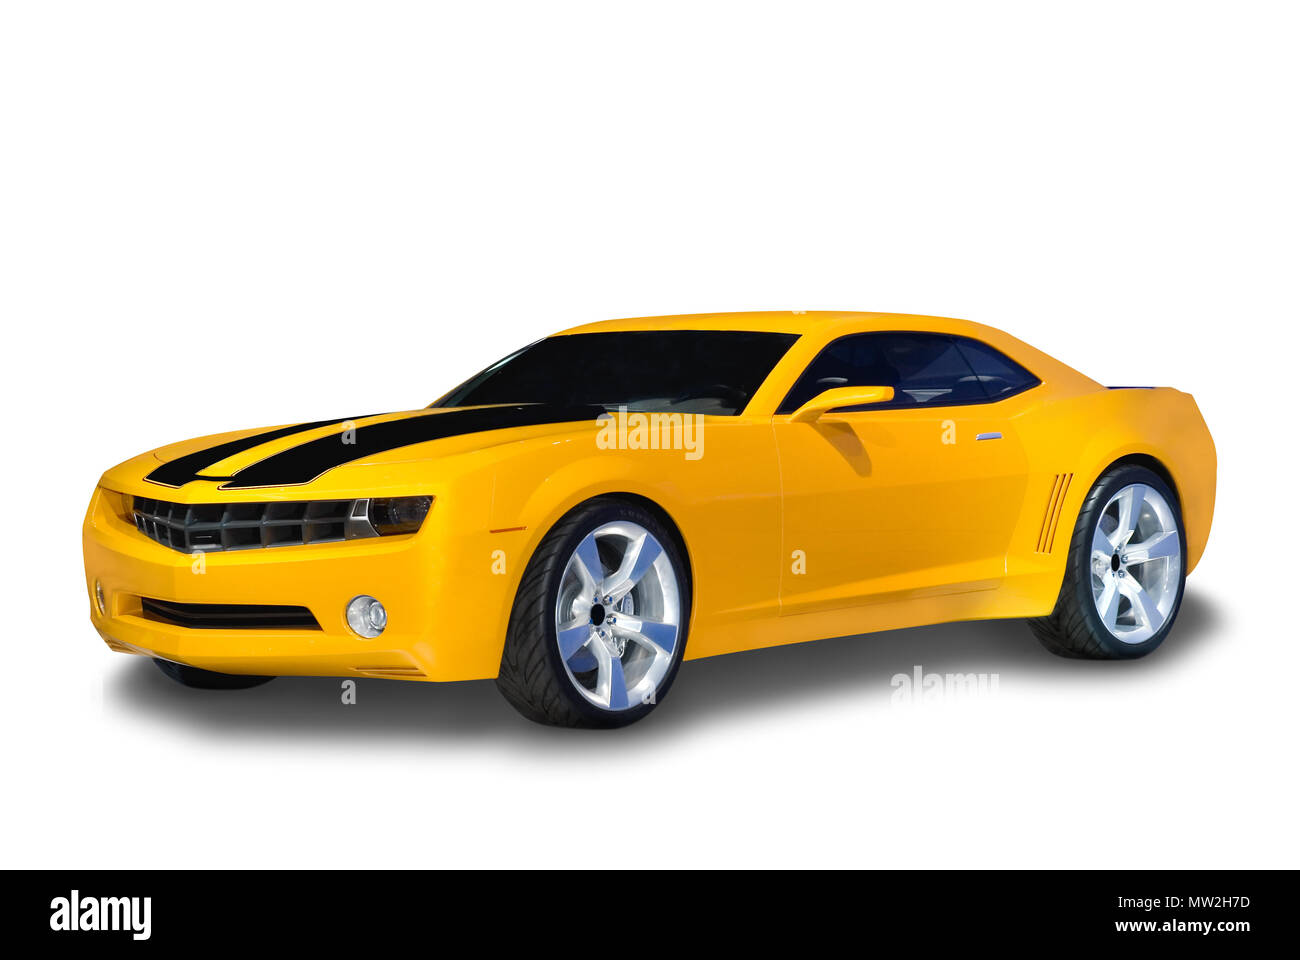 Marke neue gelbe Chevrolet Camaro Sportwagen mit Classic Retro Design. Auf  einem weißen Hintergrund mit einem Schatten ausführlich unter dem Auto  gezeichnet isoliert. Ein Stockfotografie - Alamy